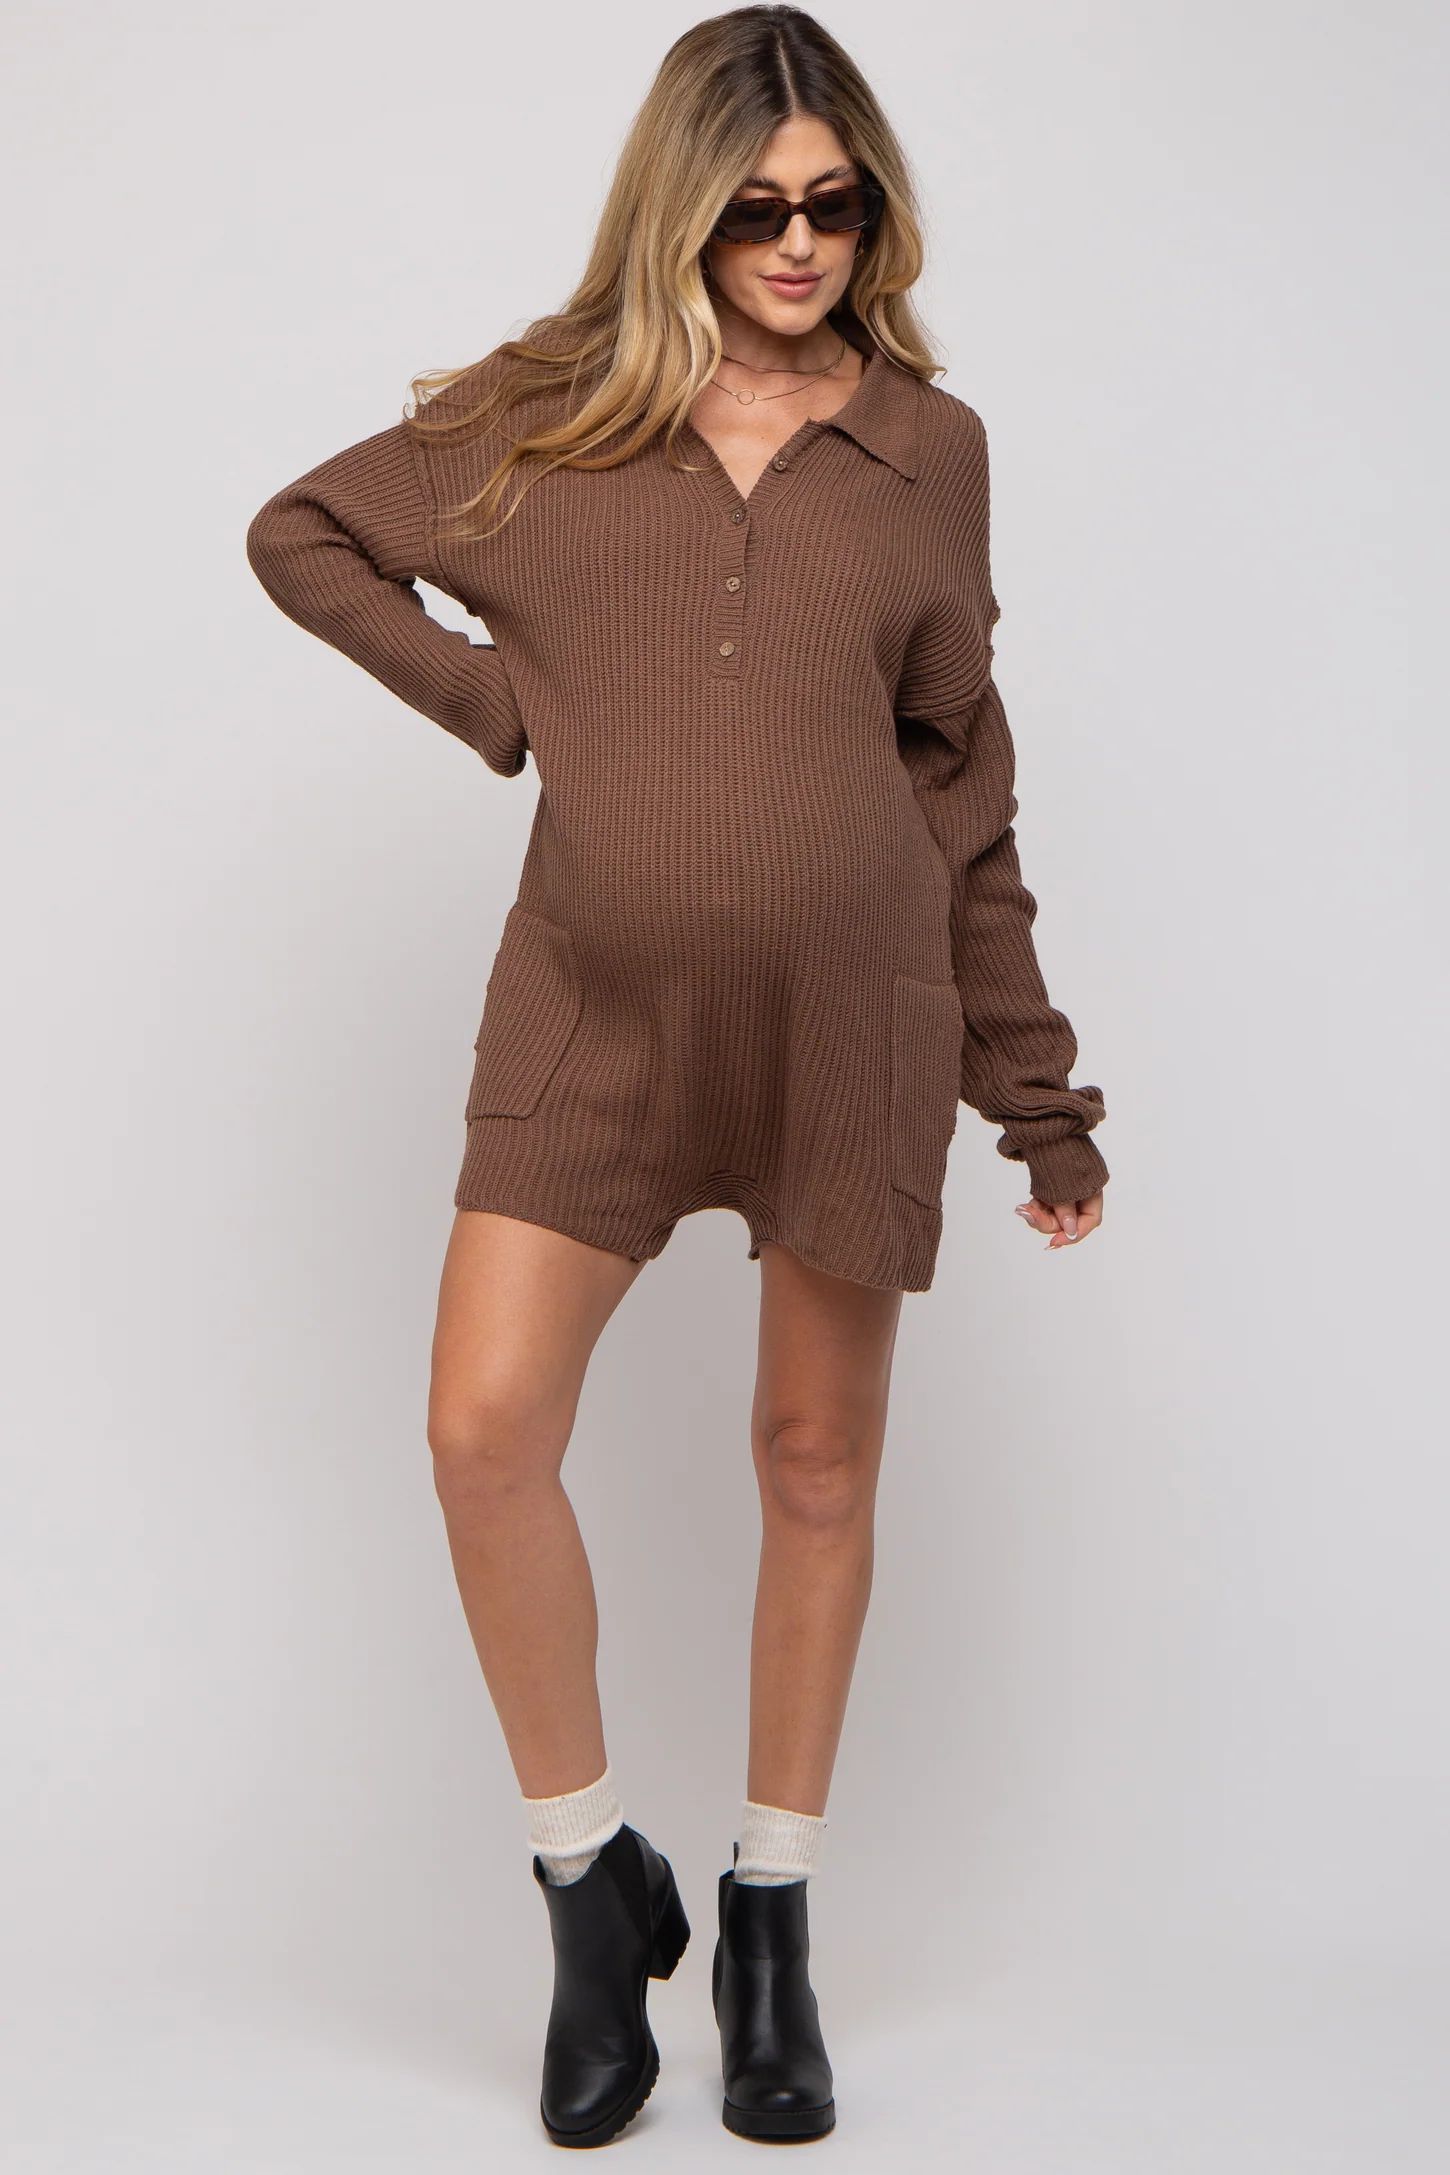 Mocha Button Up Maternity Sweater Romper | PinkBlush Maternity